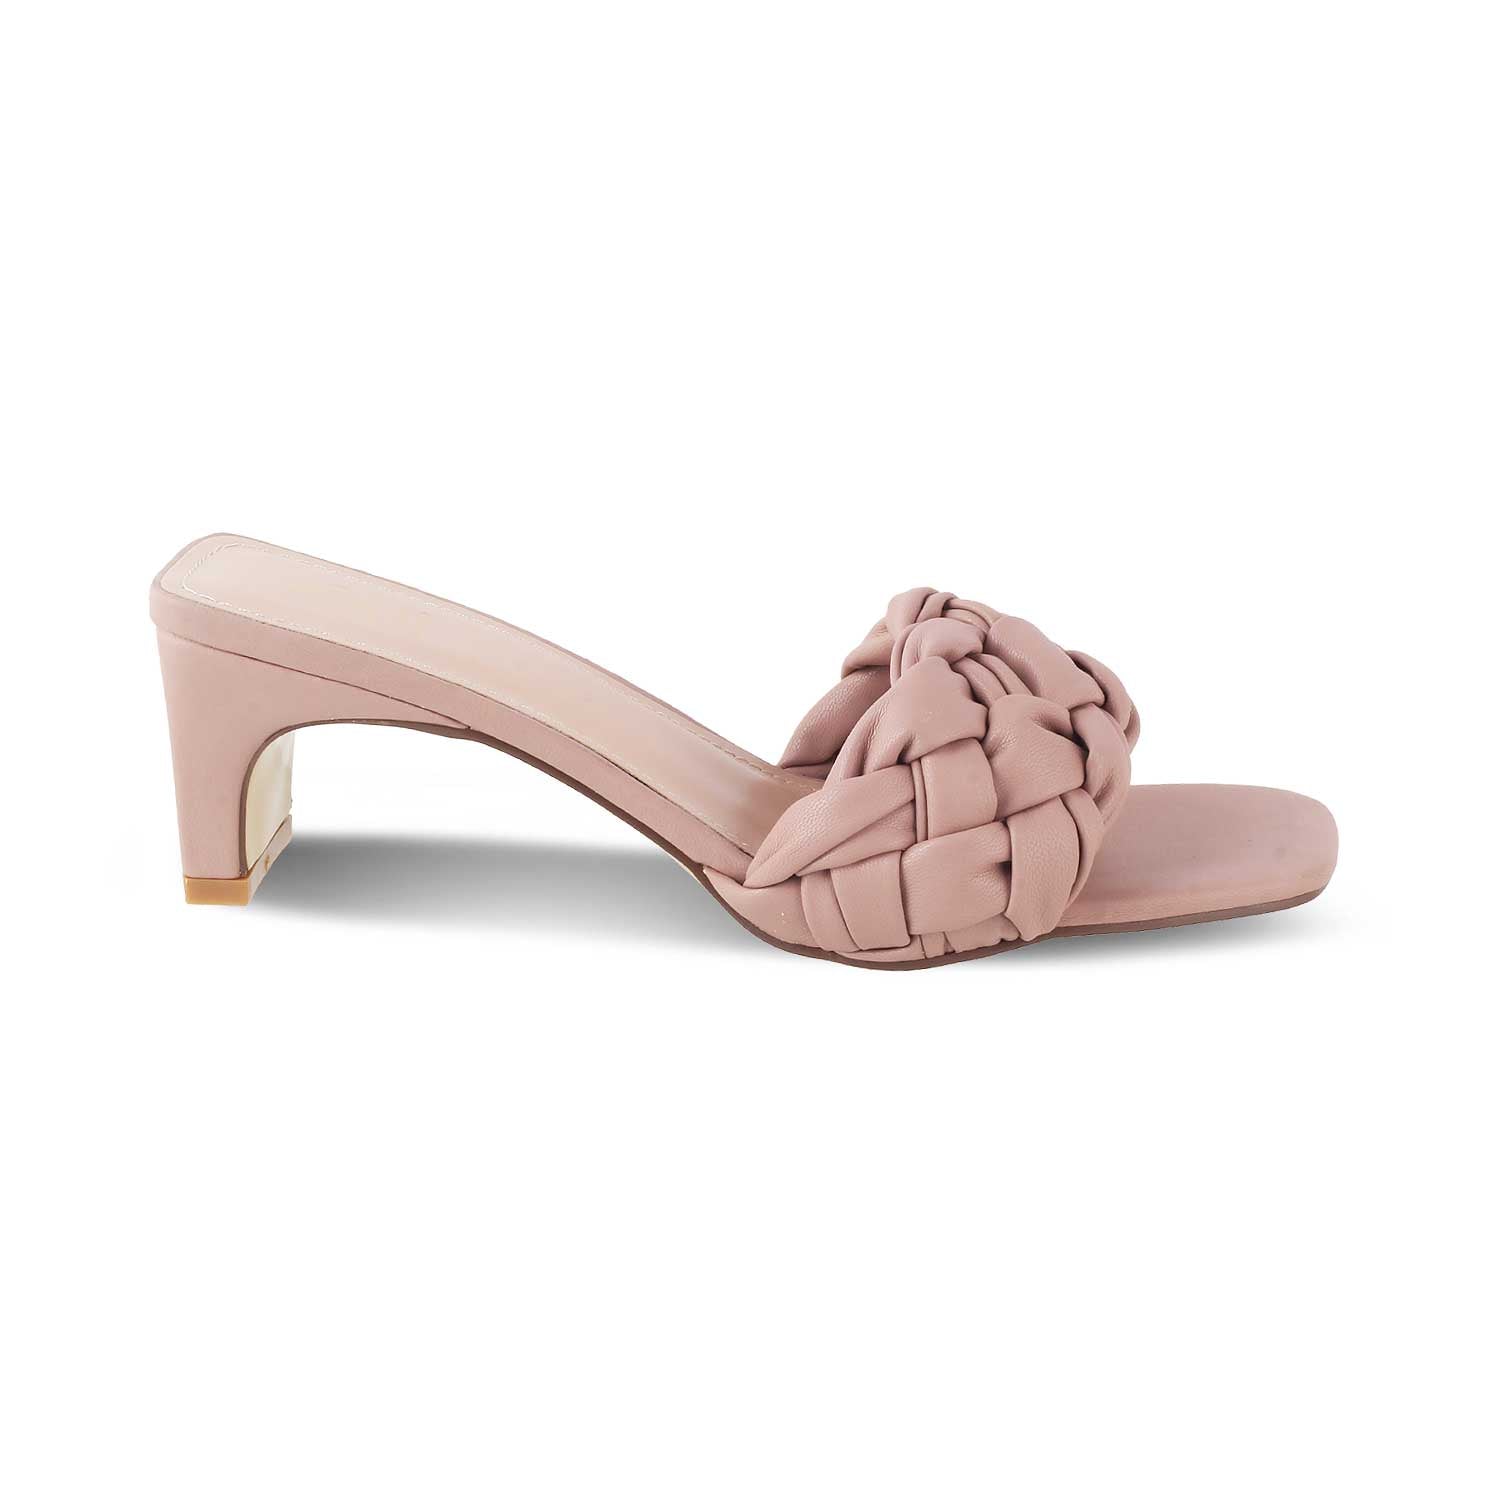 The Pragues Pink Women's Dress Heel Sandals Tresmode - Tresmode